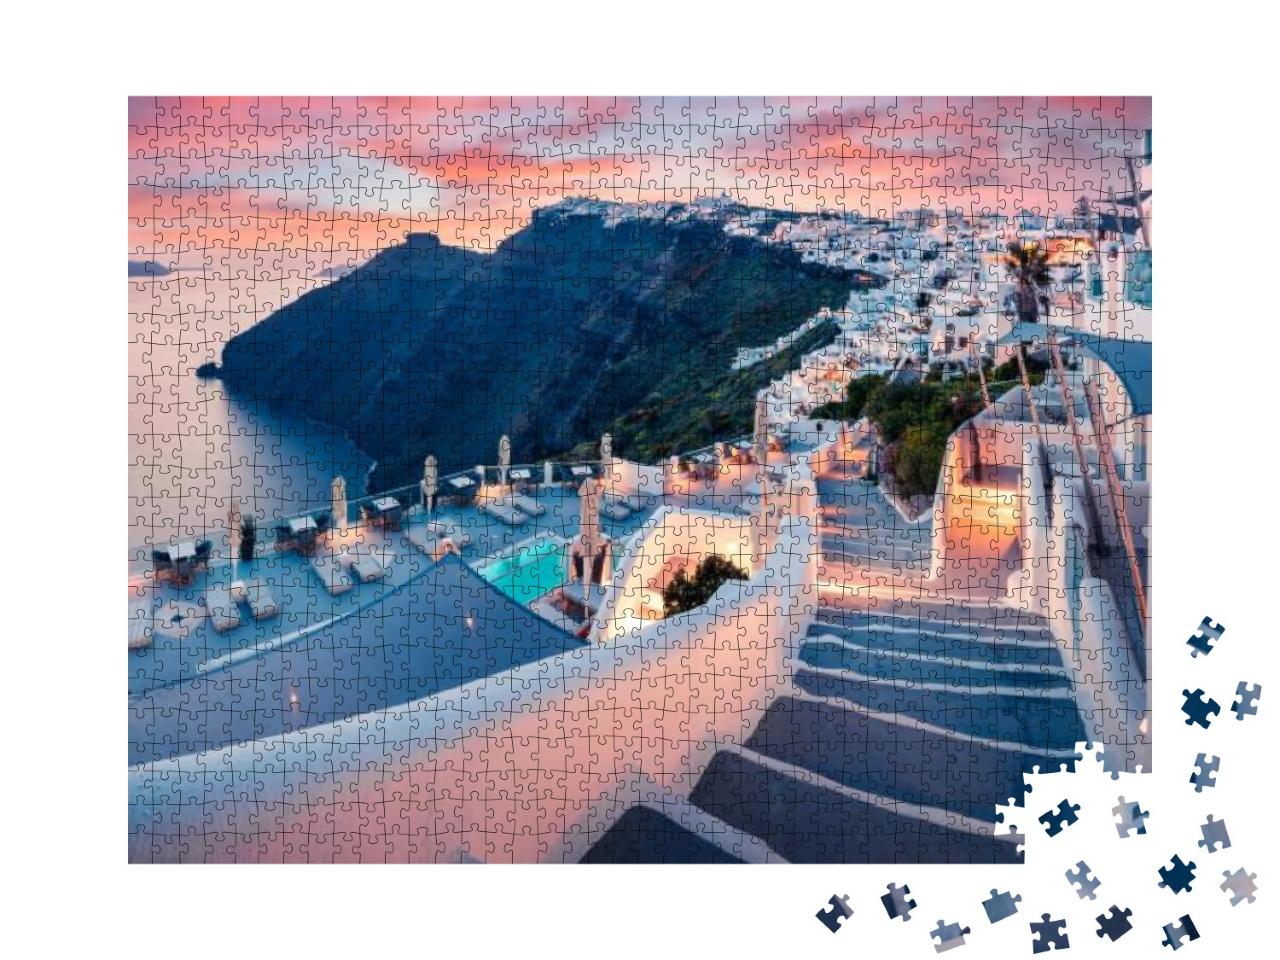 Puzzle 1000 Teile „Abendansicht der Insel Santorin, Frühjahr in Griechenland“